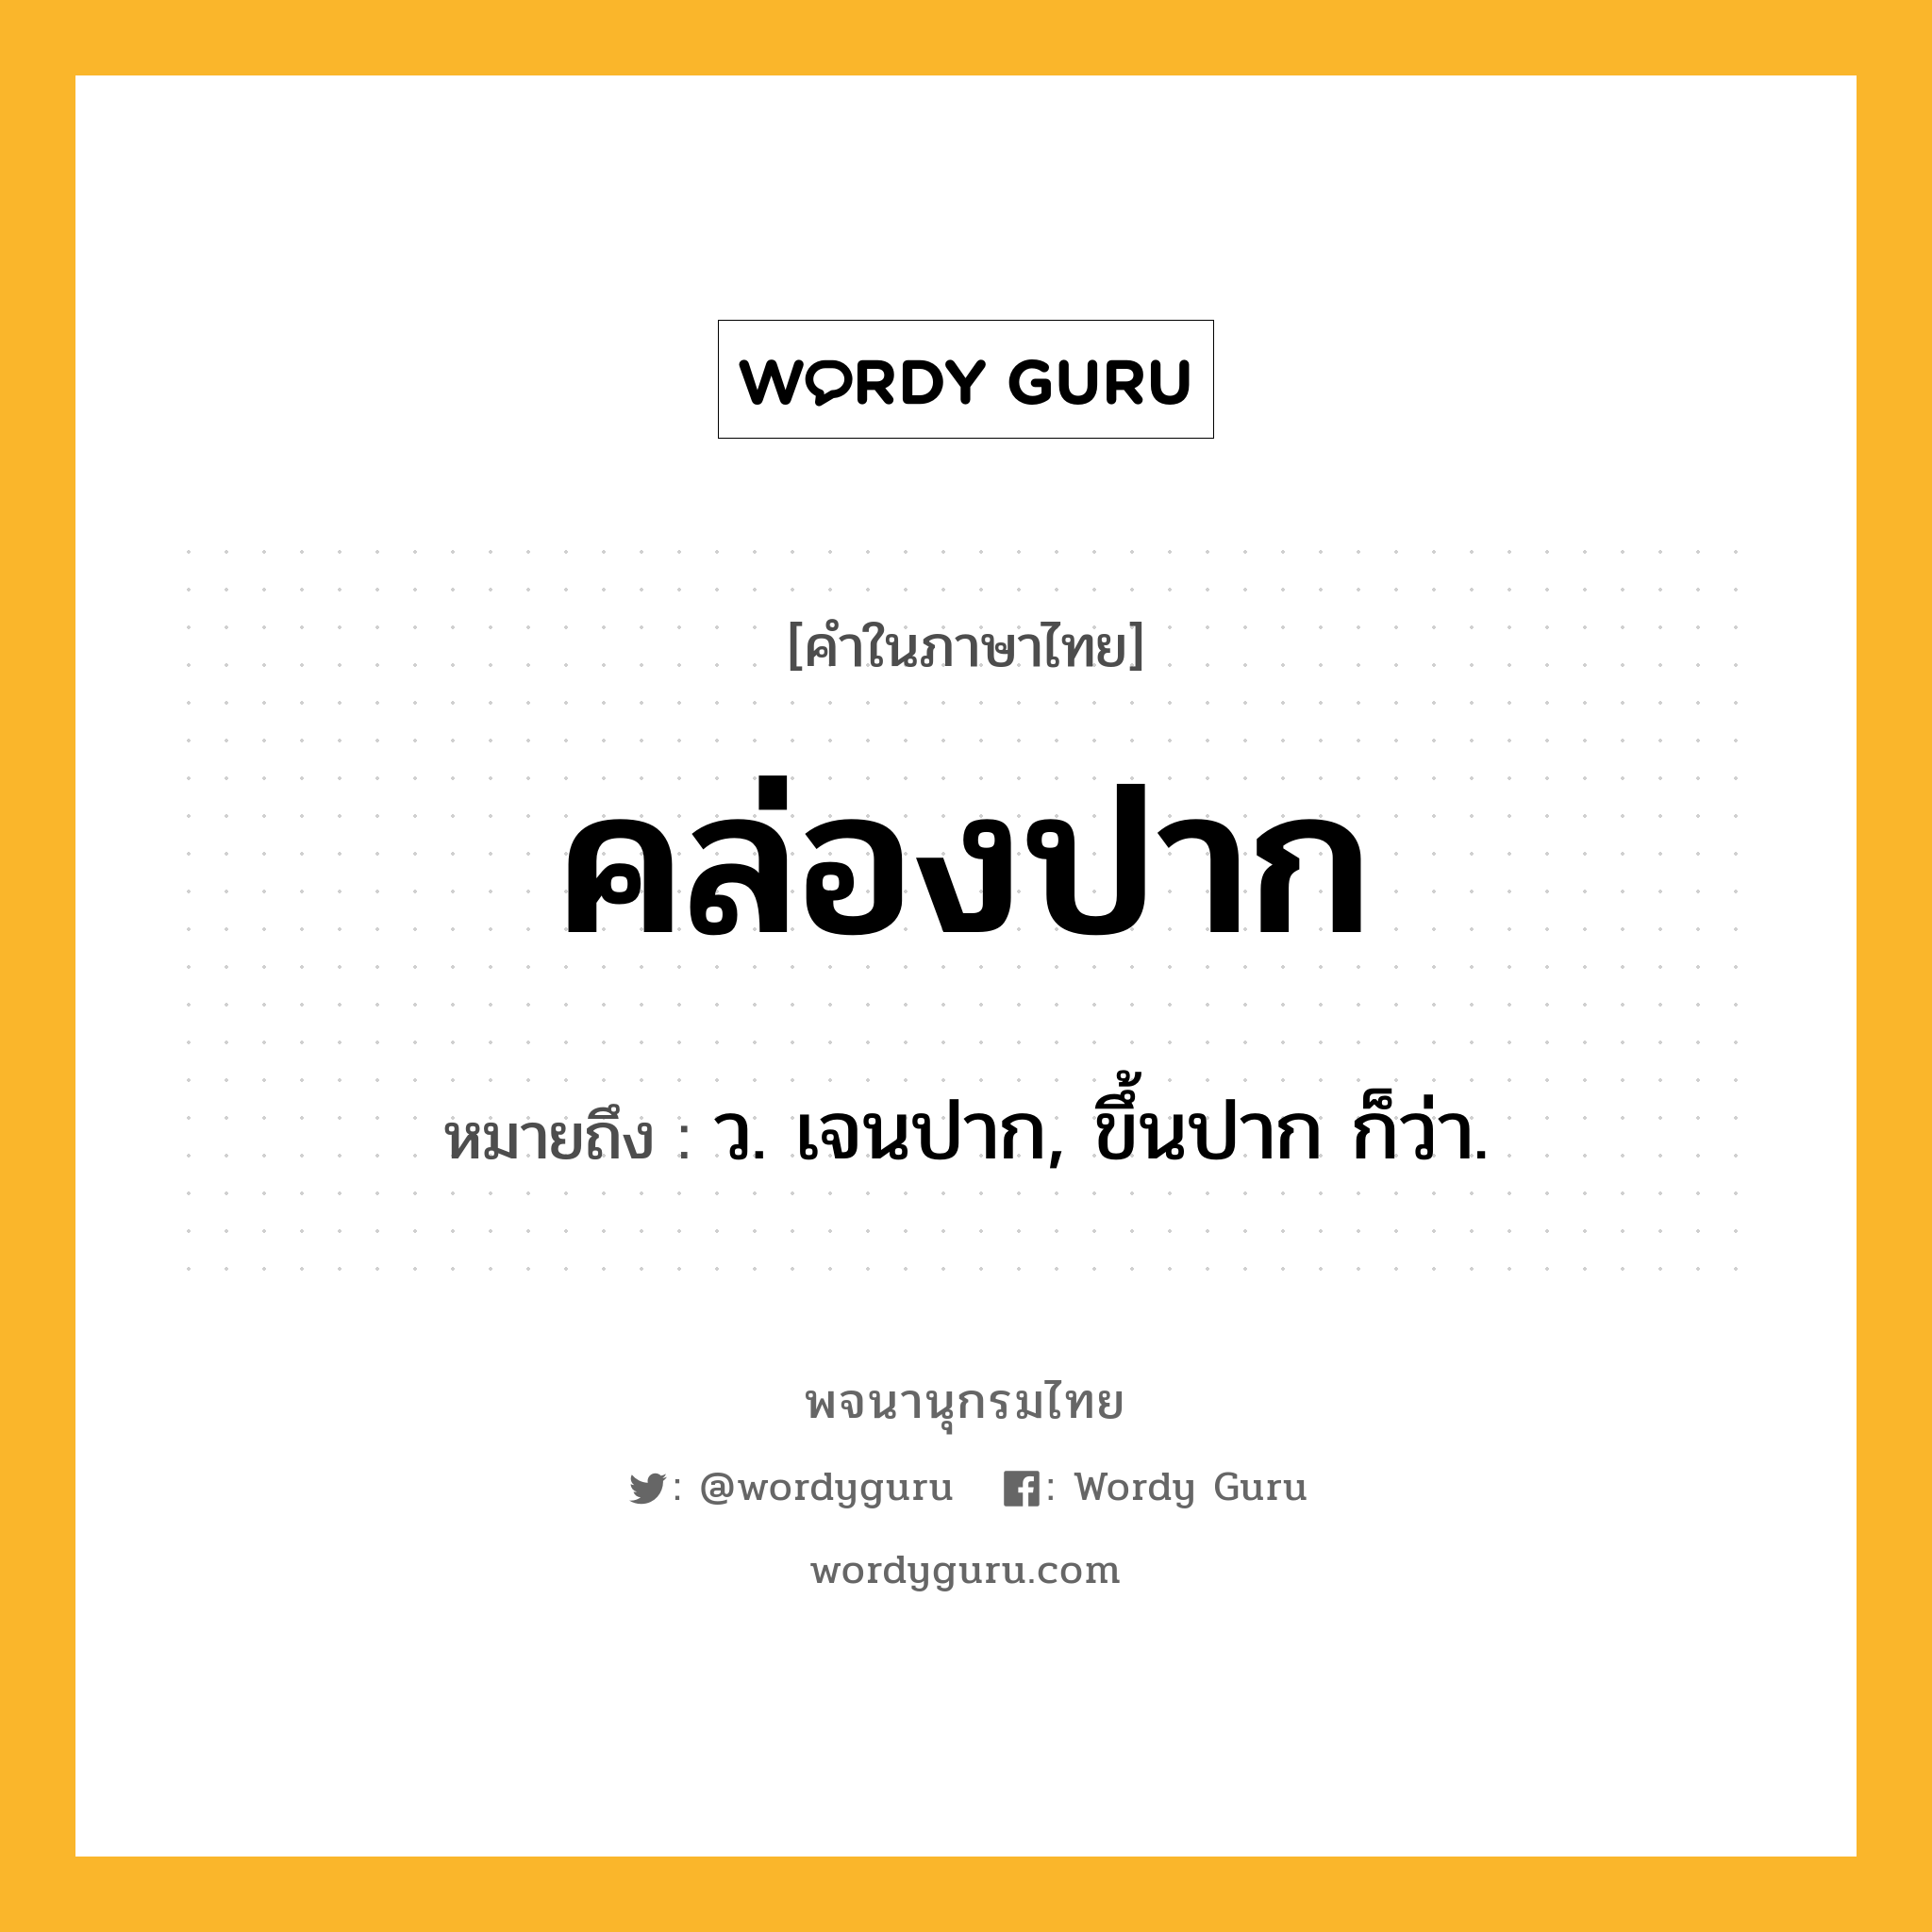 คล่องปาก ความหมาย หมายถึงอะไร?, คำในภาษาไทย คล่องปาก หมายถึง ว. เจนปาก, ขึ้นปาก ก็ว่า.